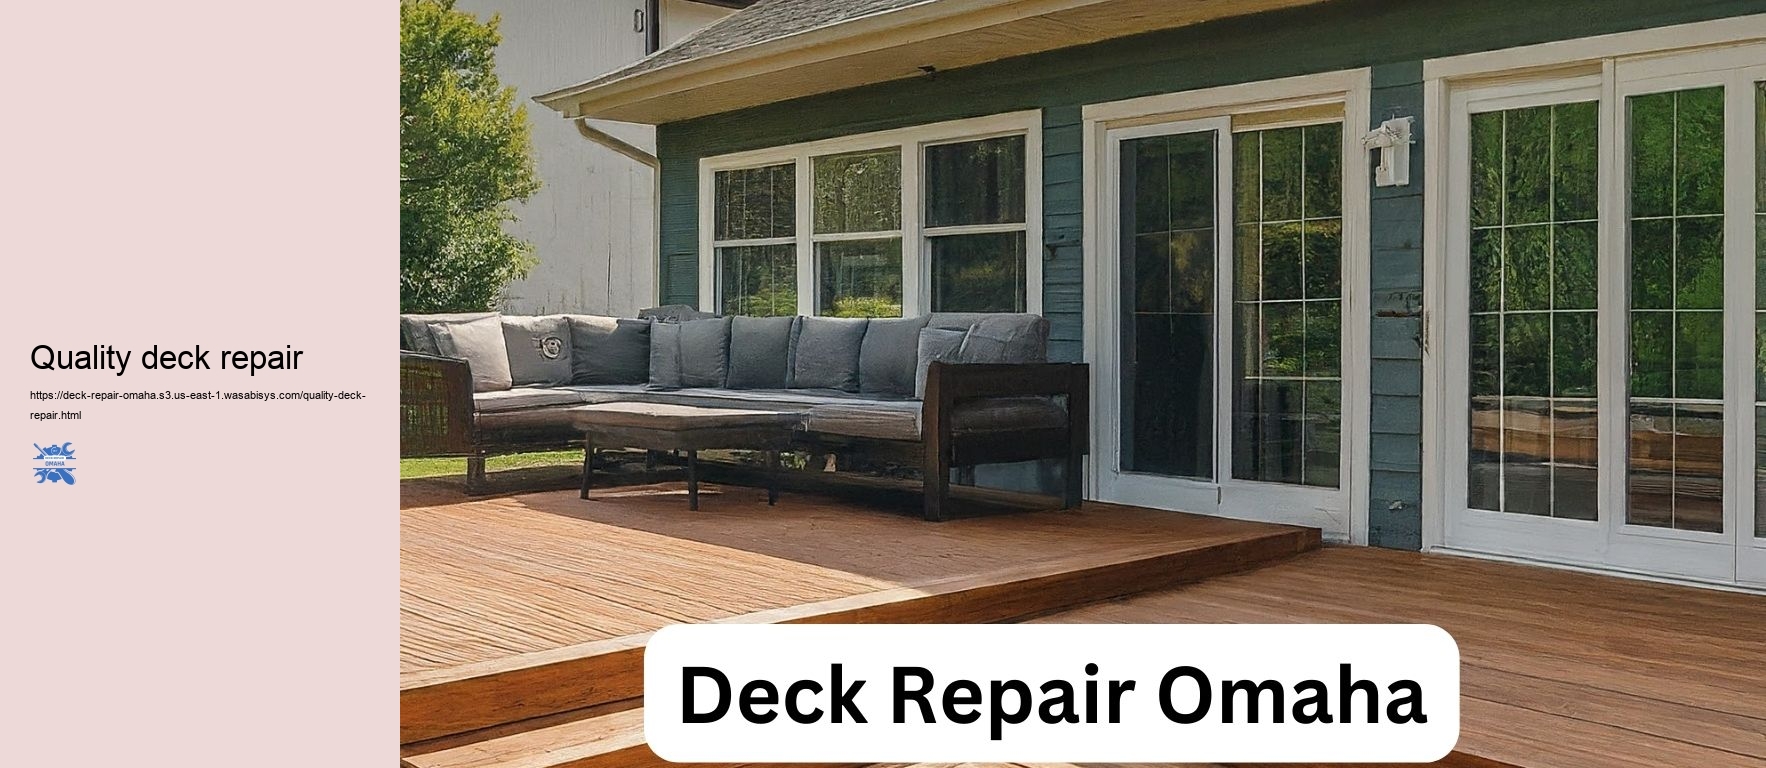 Quality deck repair